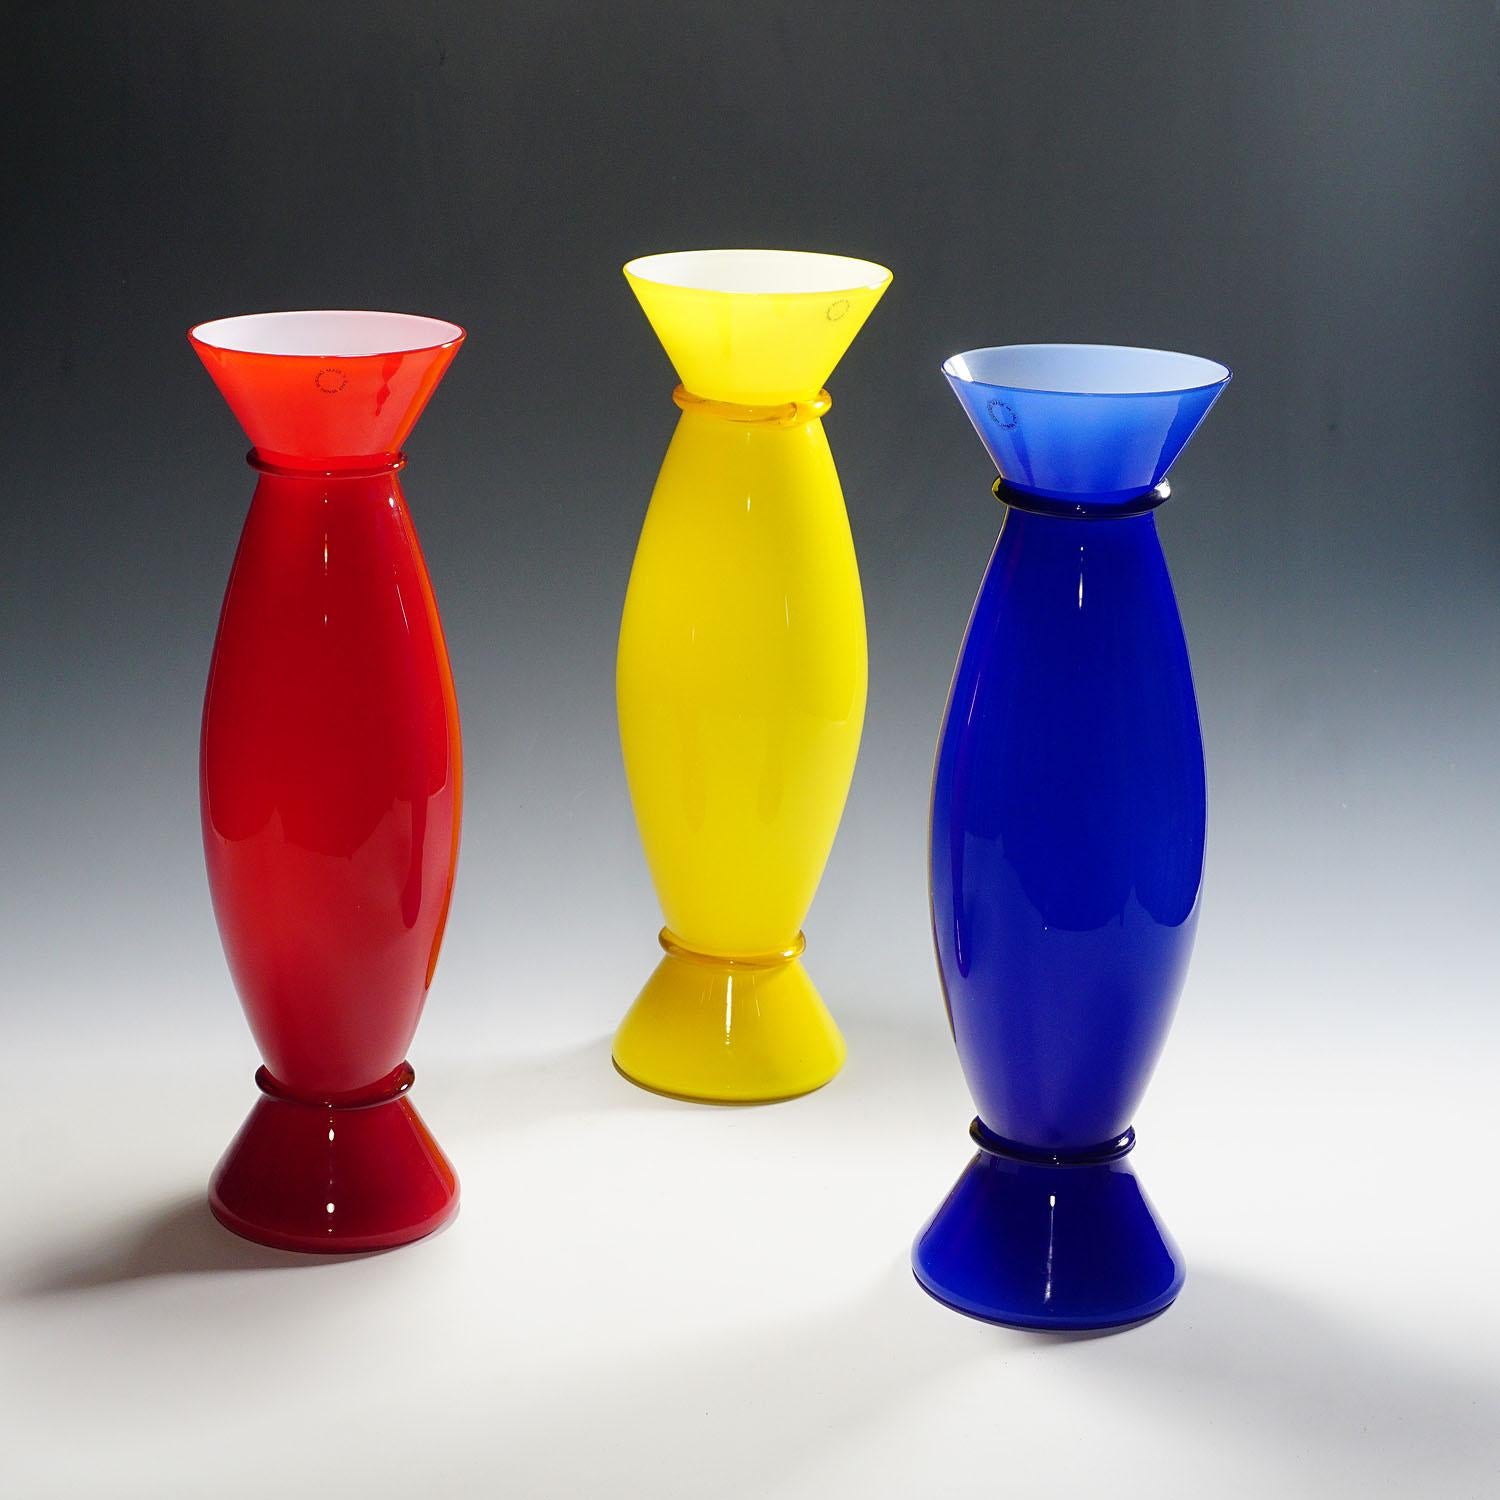 Ein Satz von drei Acco-Vasen, entworfen 1988 von Alessandro Mendini für Venini, Venedig. Weißes undurchsichtiges Glas mit farbigen Überlagerungen in Rot, Gelb und Blau und einer klaren Glasoberfläche. Alle drei mit eingeschnittener Signatur 'venini